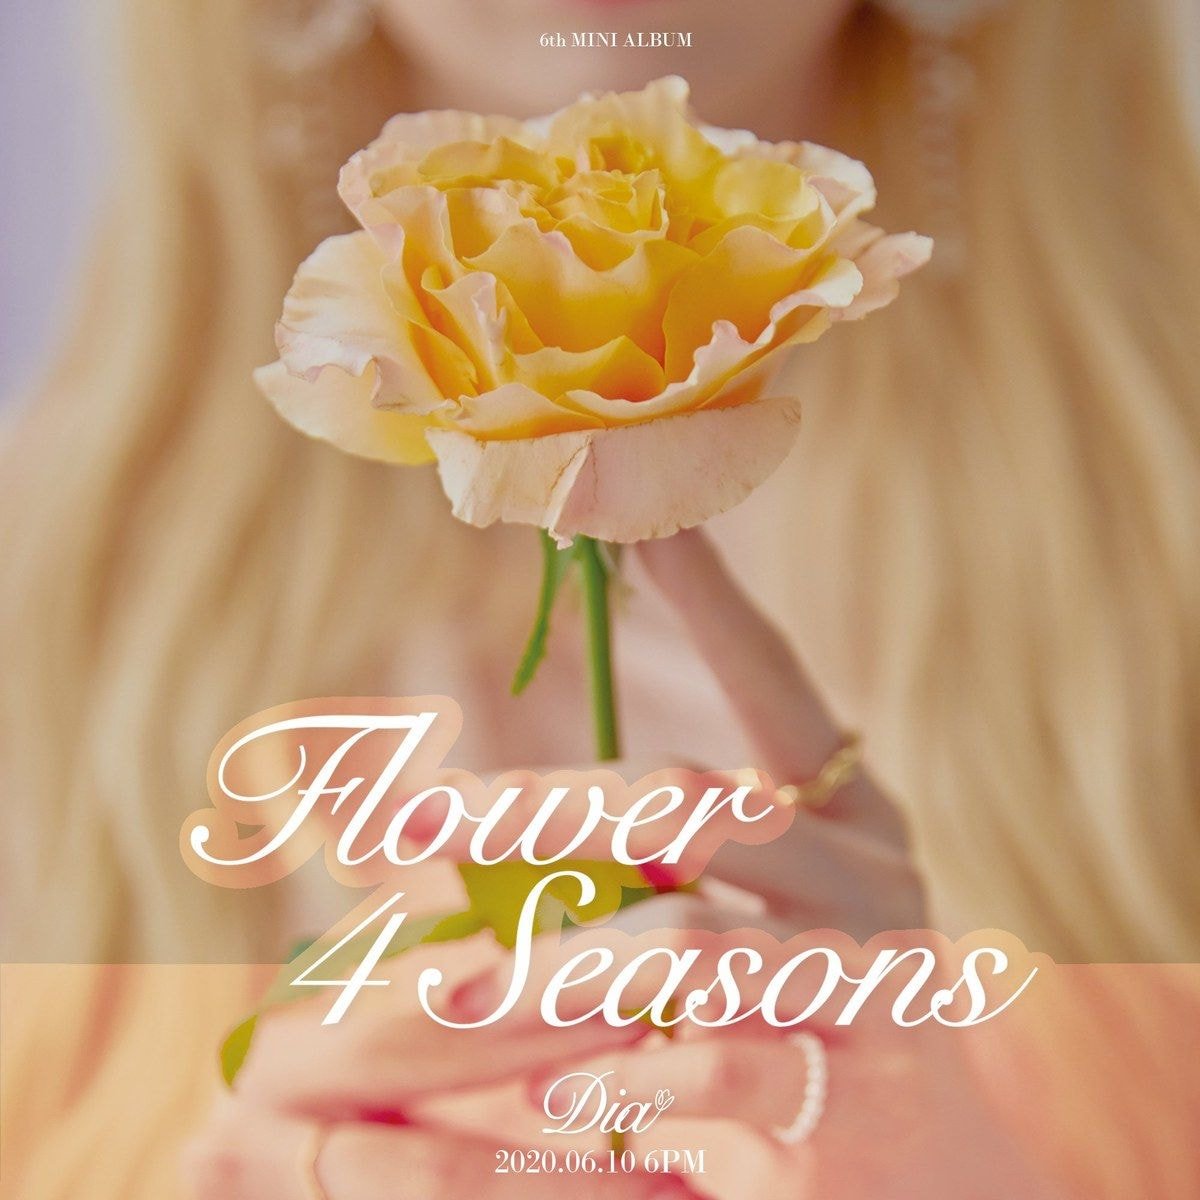 다이아(DIA) 6th MINI ALBUM 'Flower 4 Seasons' 티저